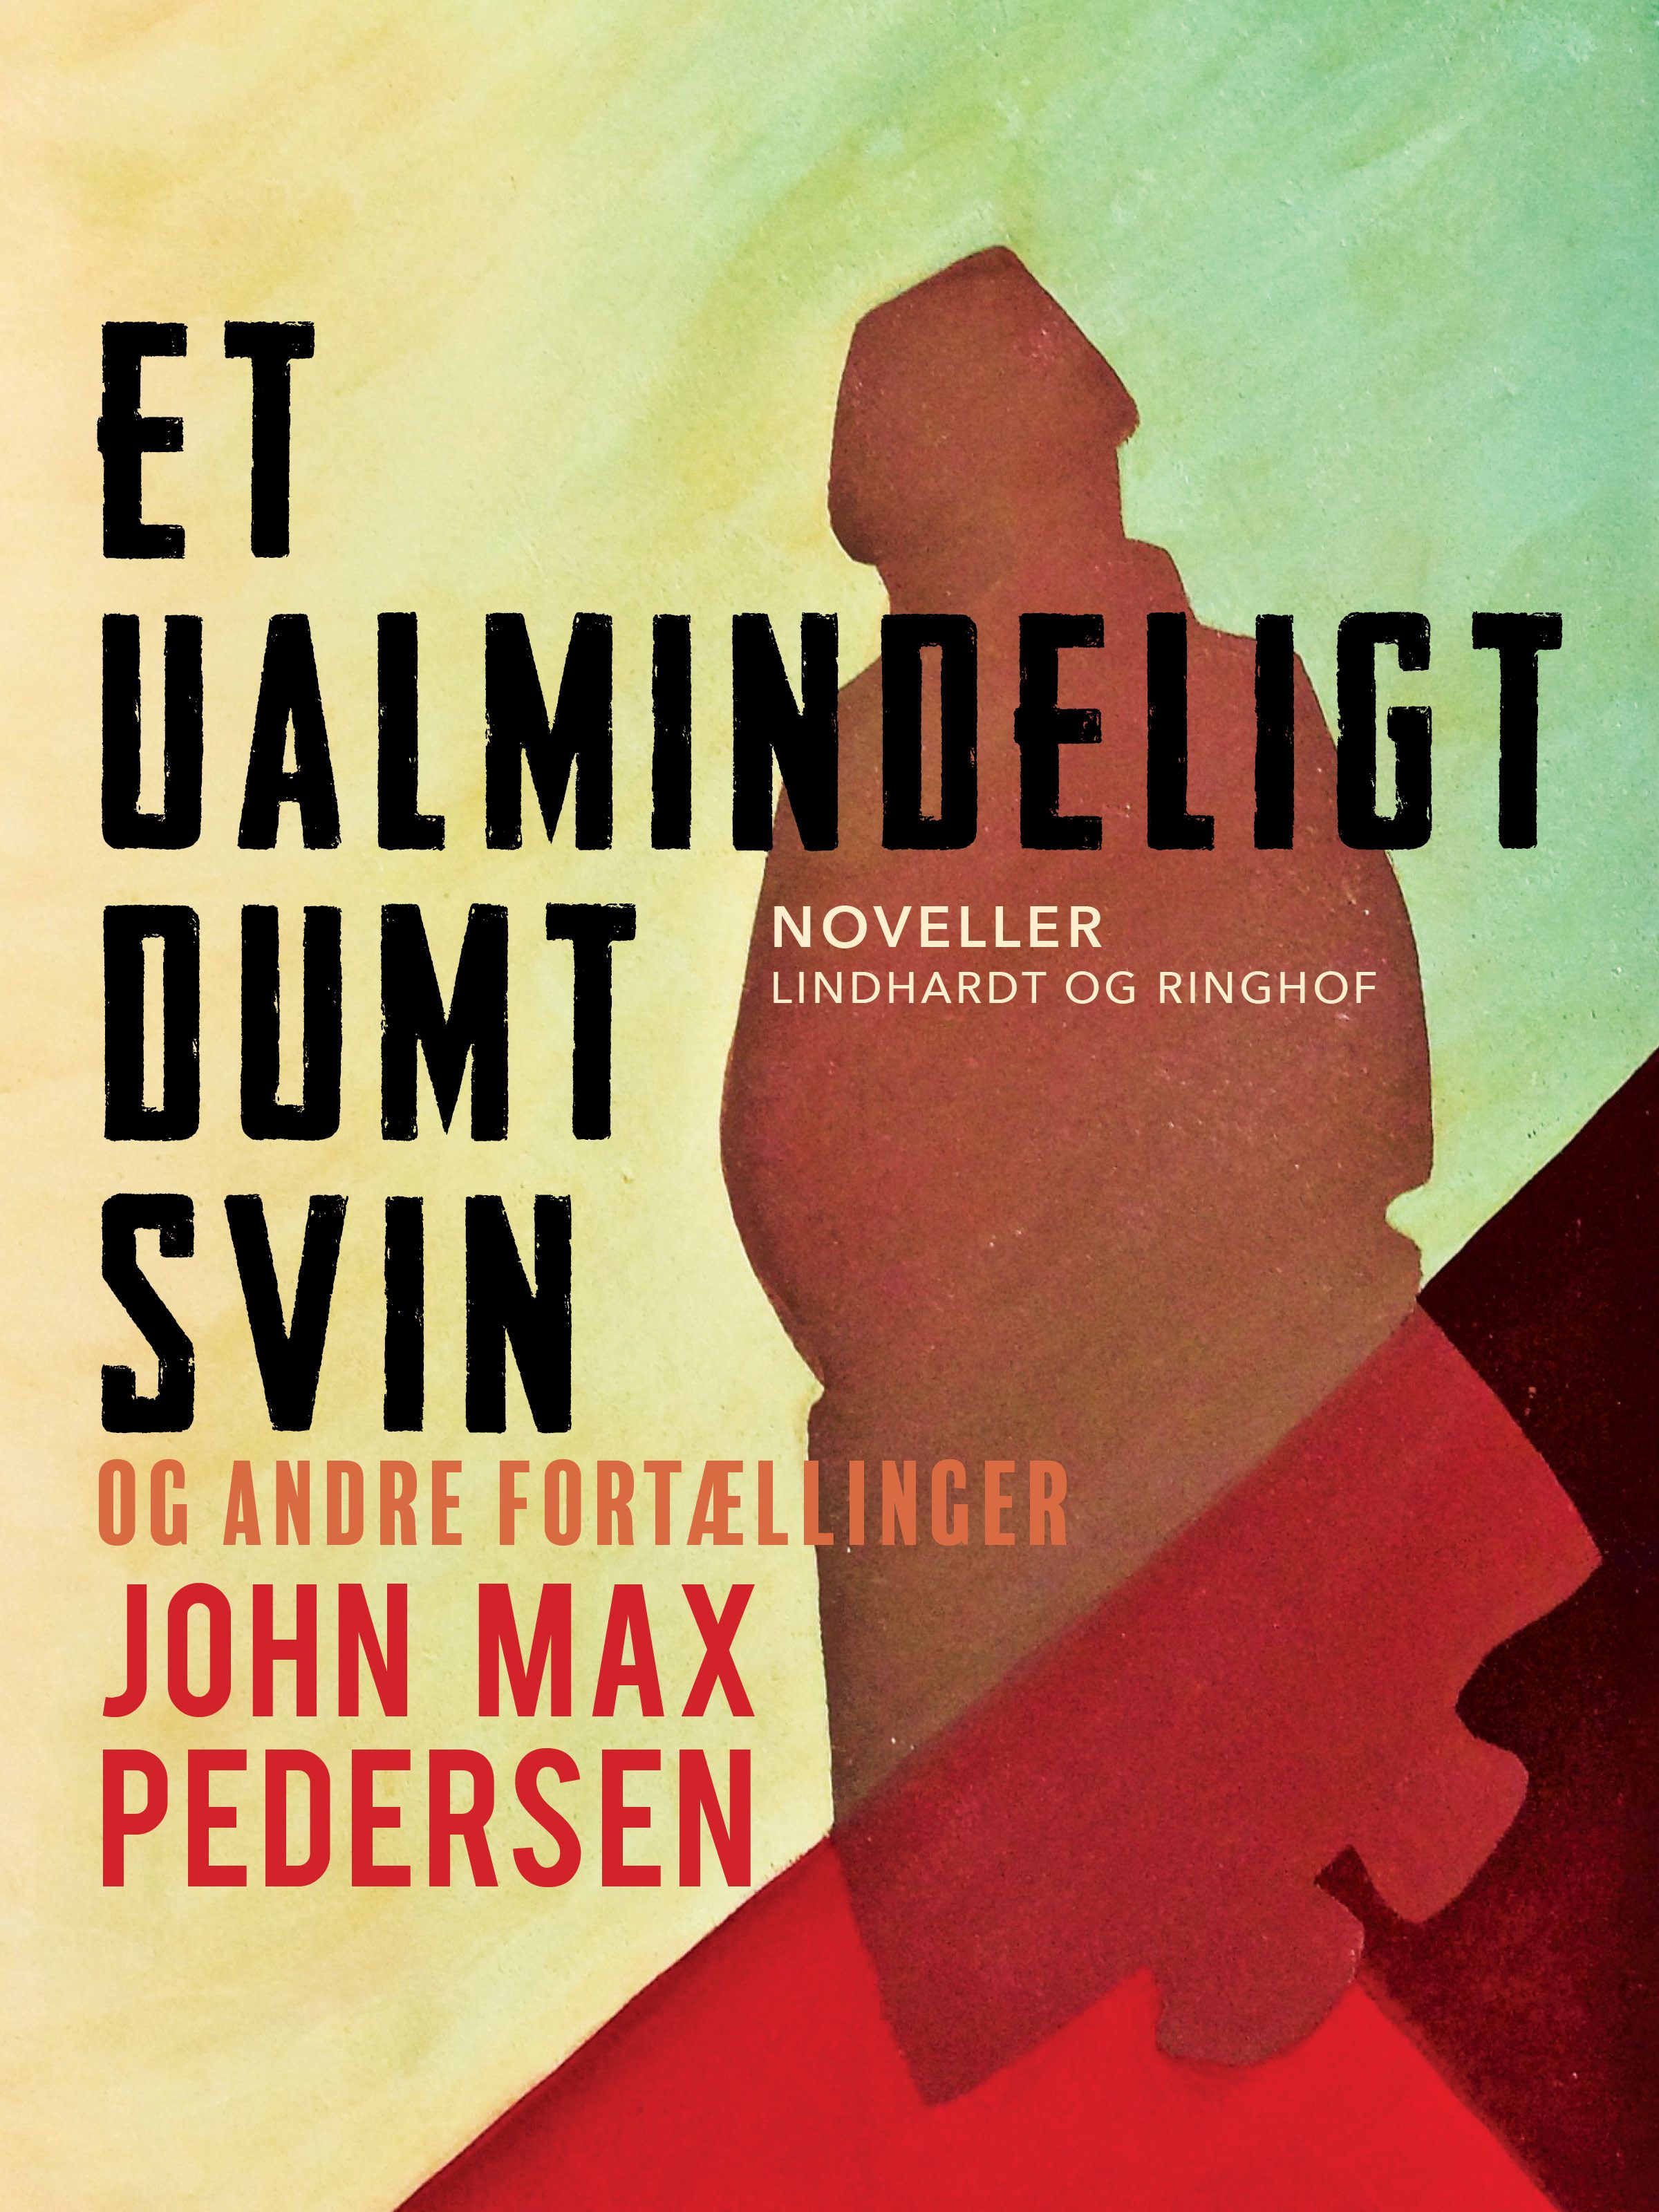 Et ualmindeligt dumt svin – og andre fortællinger, e-bok av John Max Pedersen